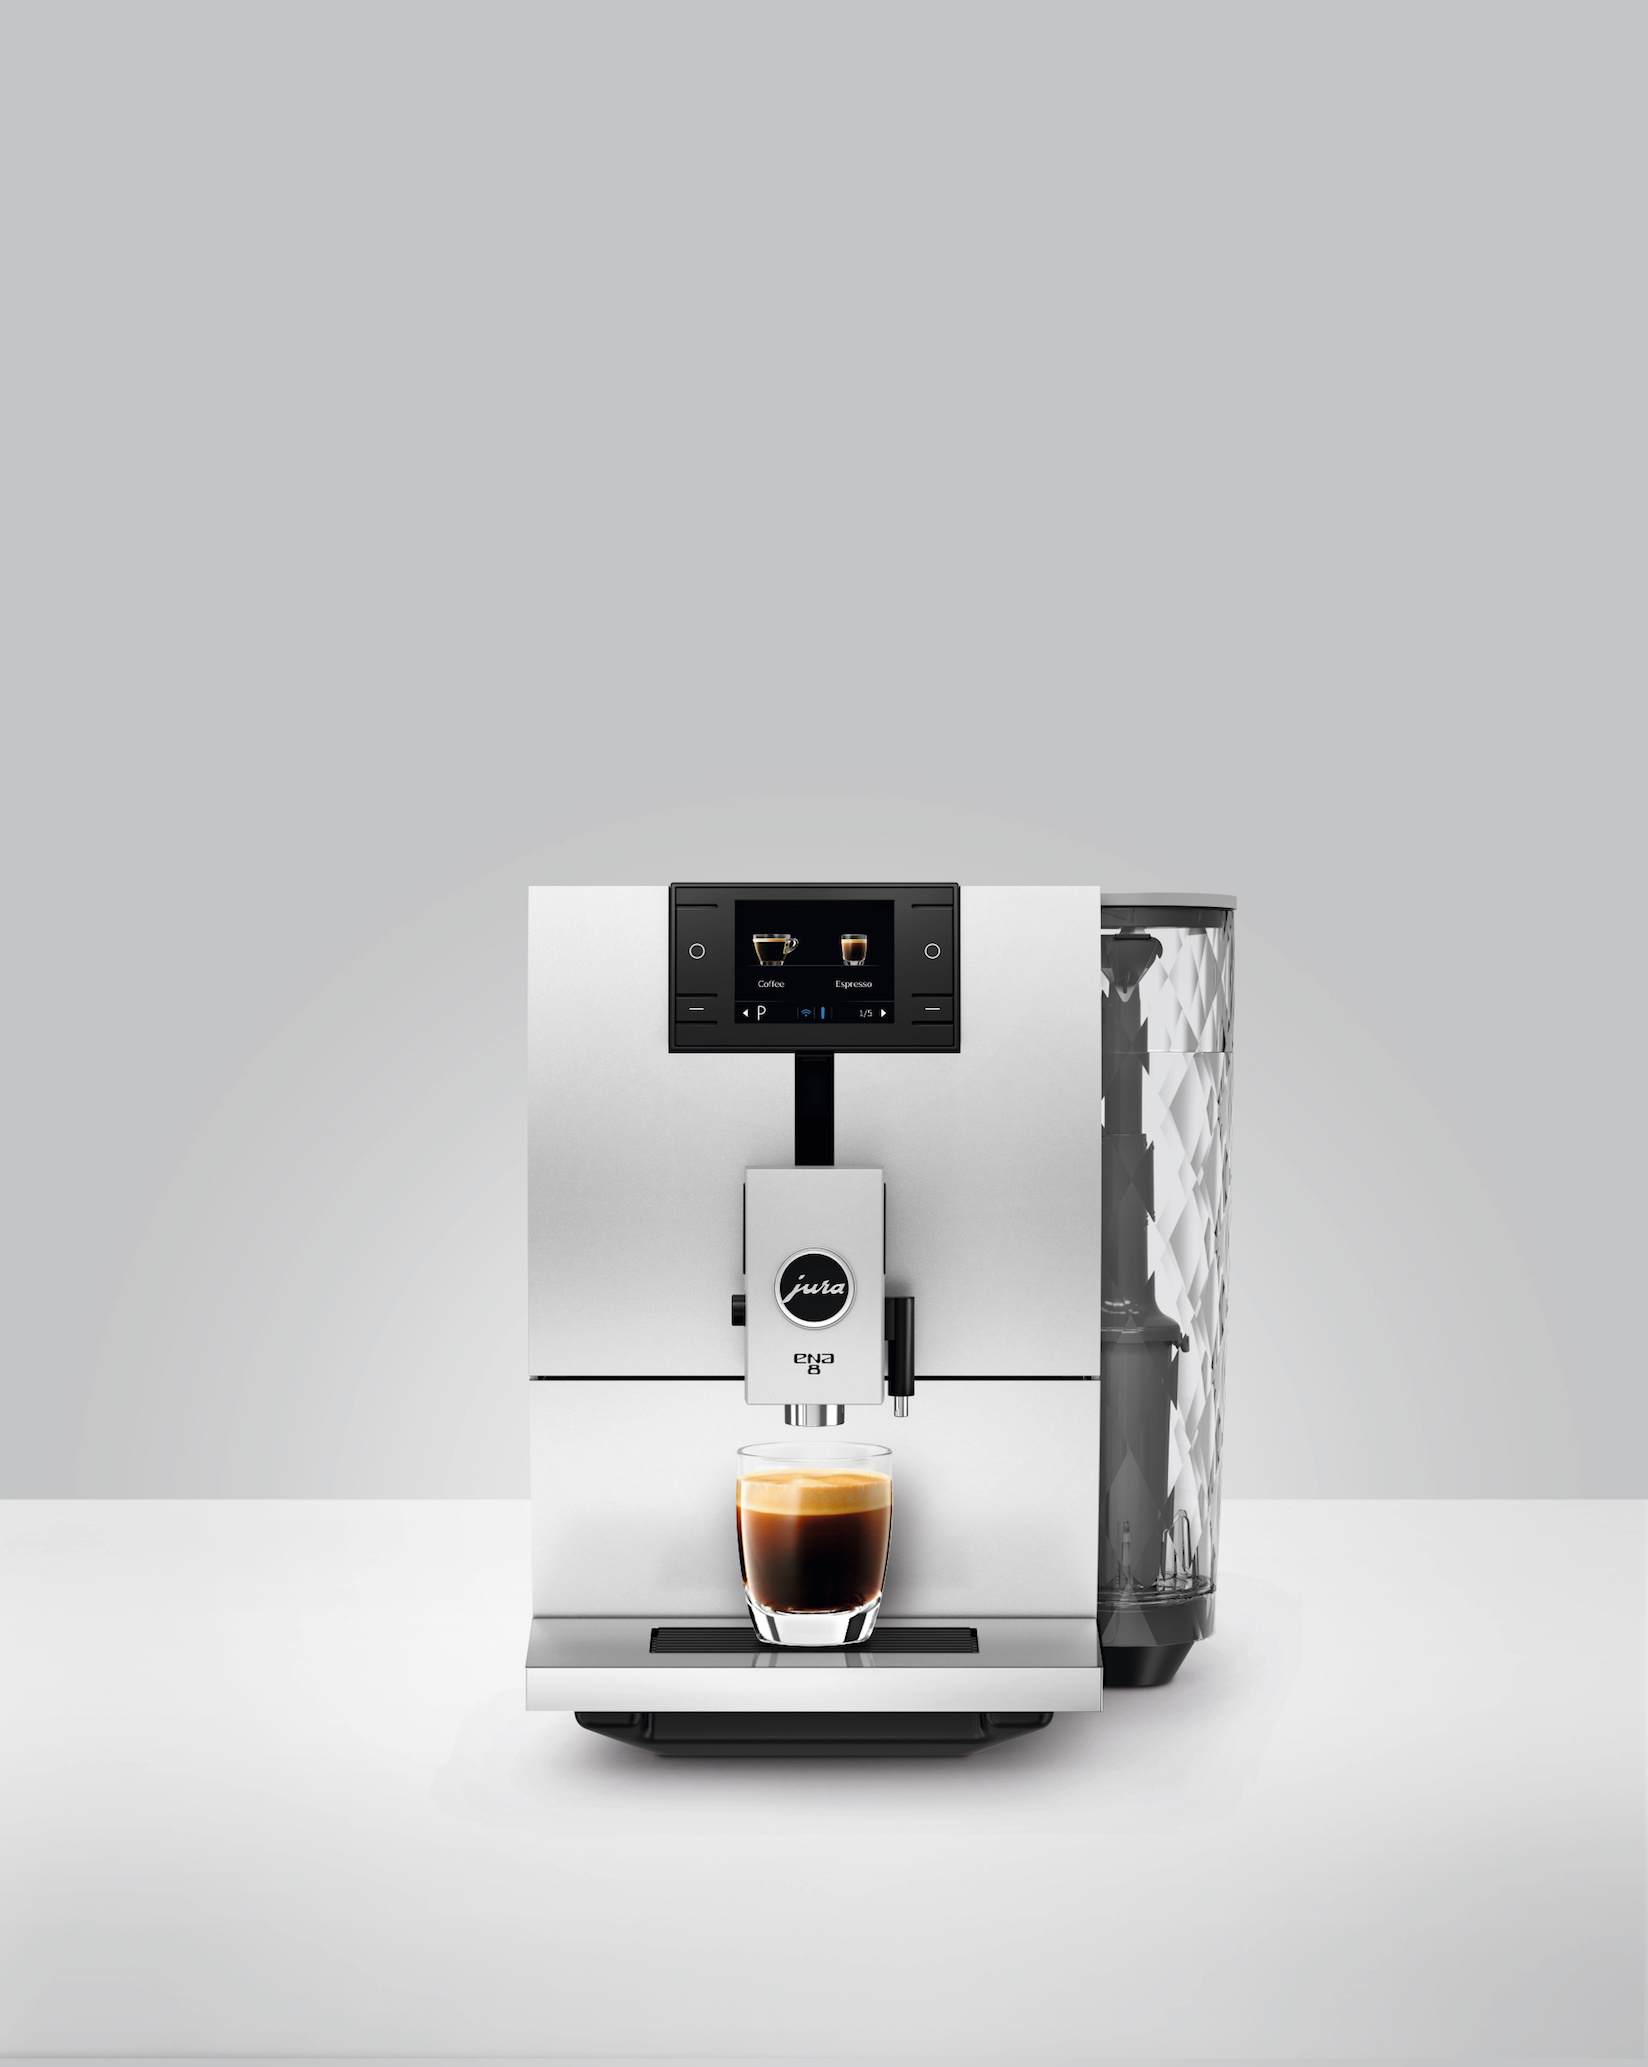 ユーラJura ENA 1自動コーヒーマシン ブラック 13626 コーヒーメーカー American Kitchenがお届け! wVRzITNtg1 - www